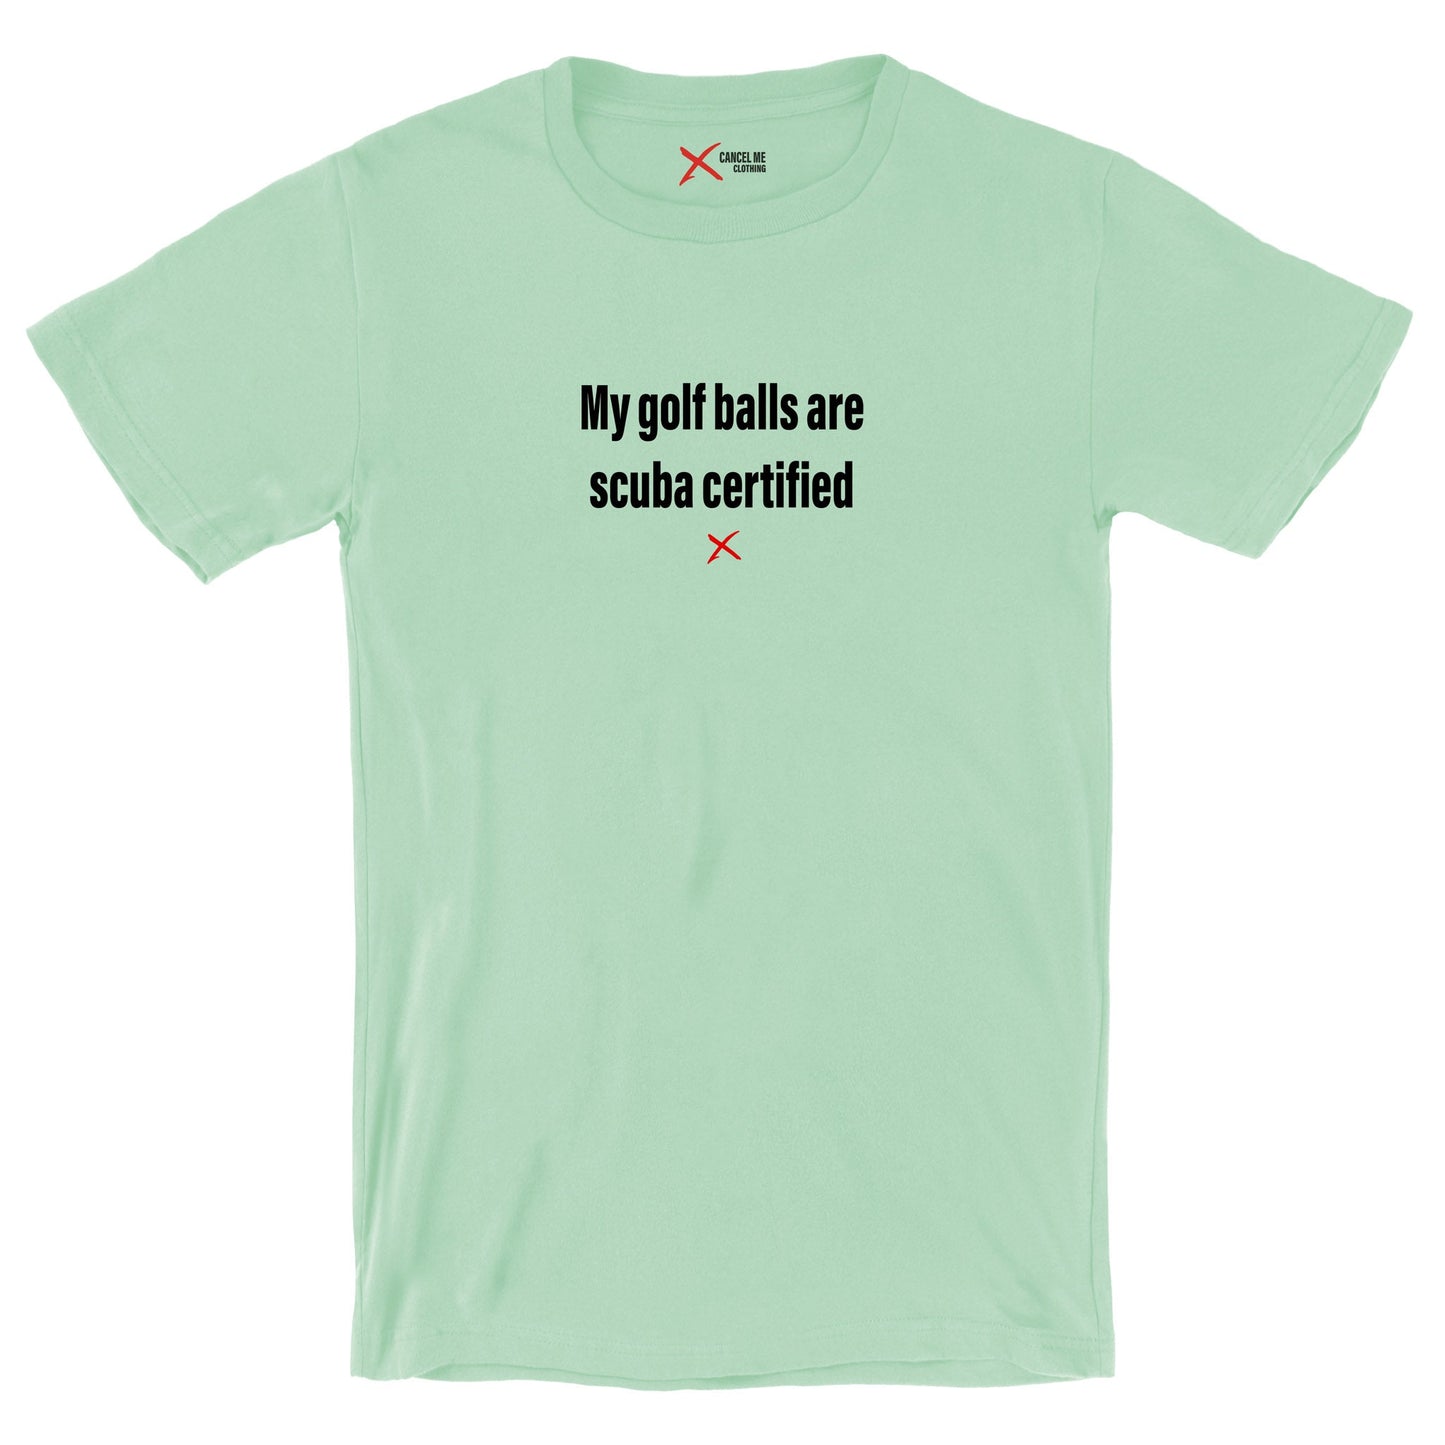 My golf balls are scuba certified - Shirt